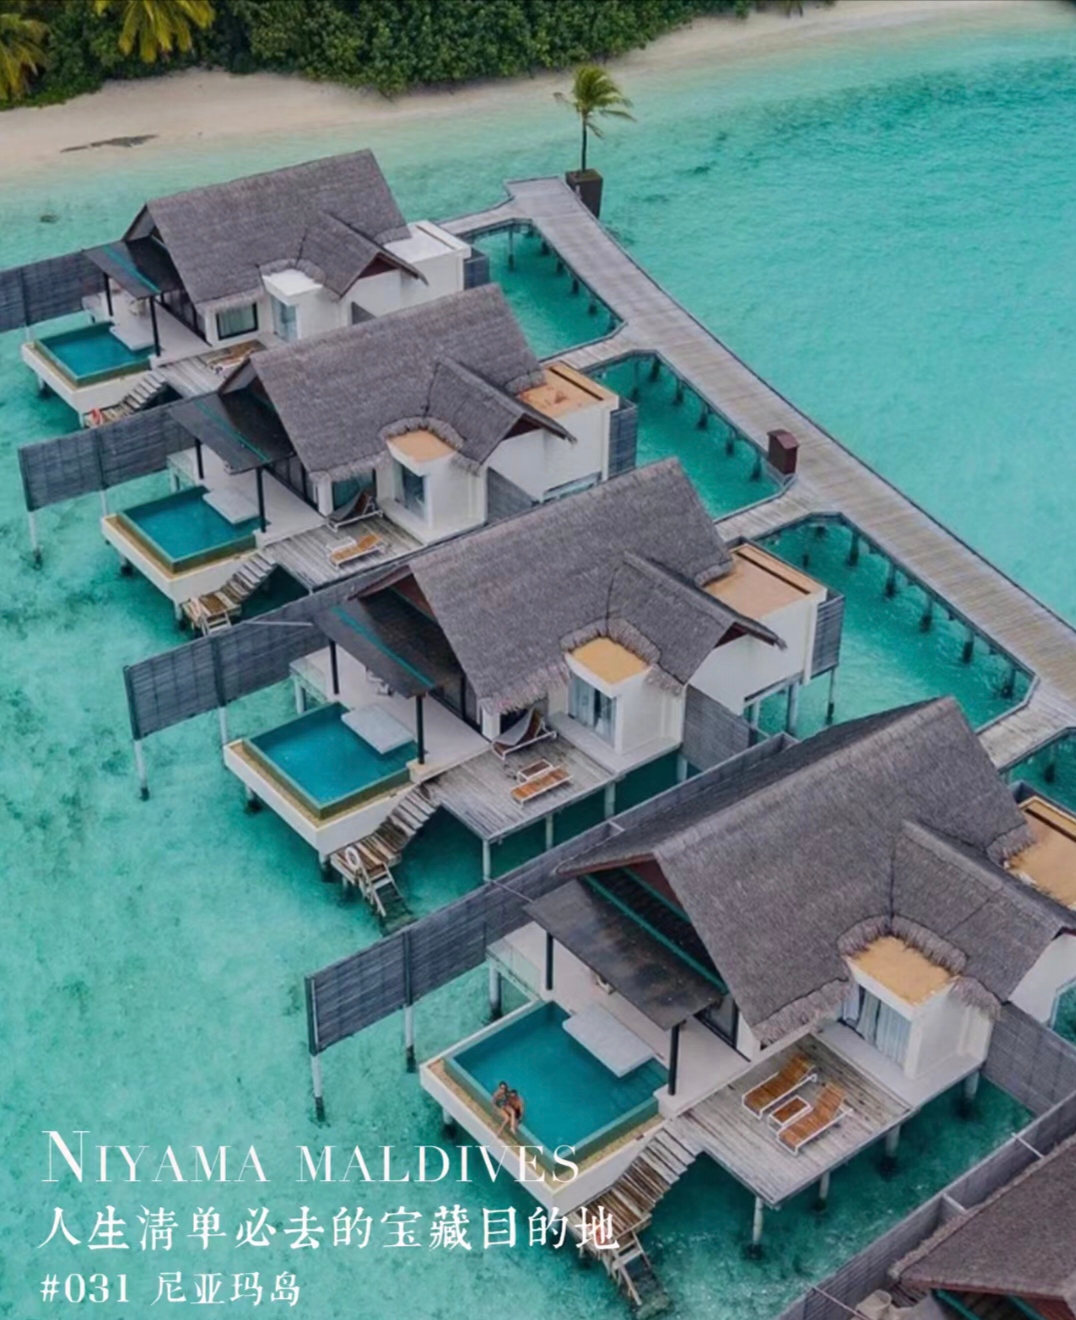 马尔代夫尼亚玛岛|明星钟爱的岛屿 马尔代夫尼亚玛岛私享度假岛( NiyamaPrivate Isla